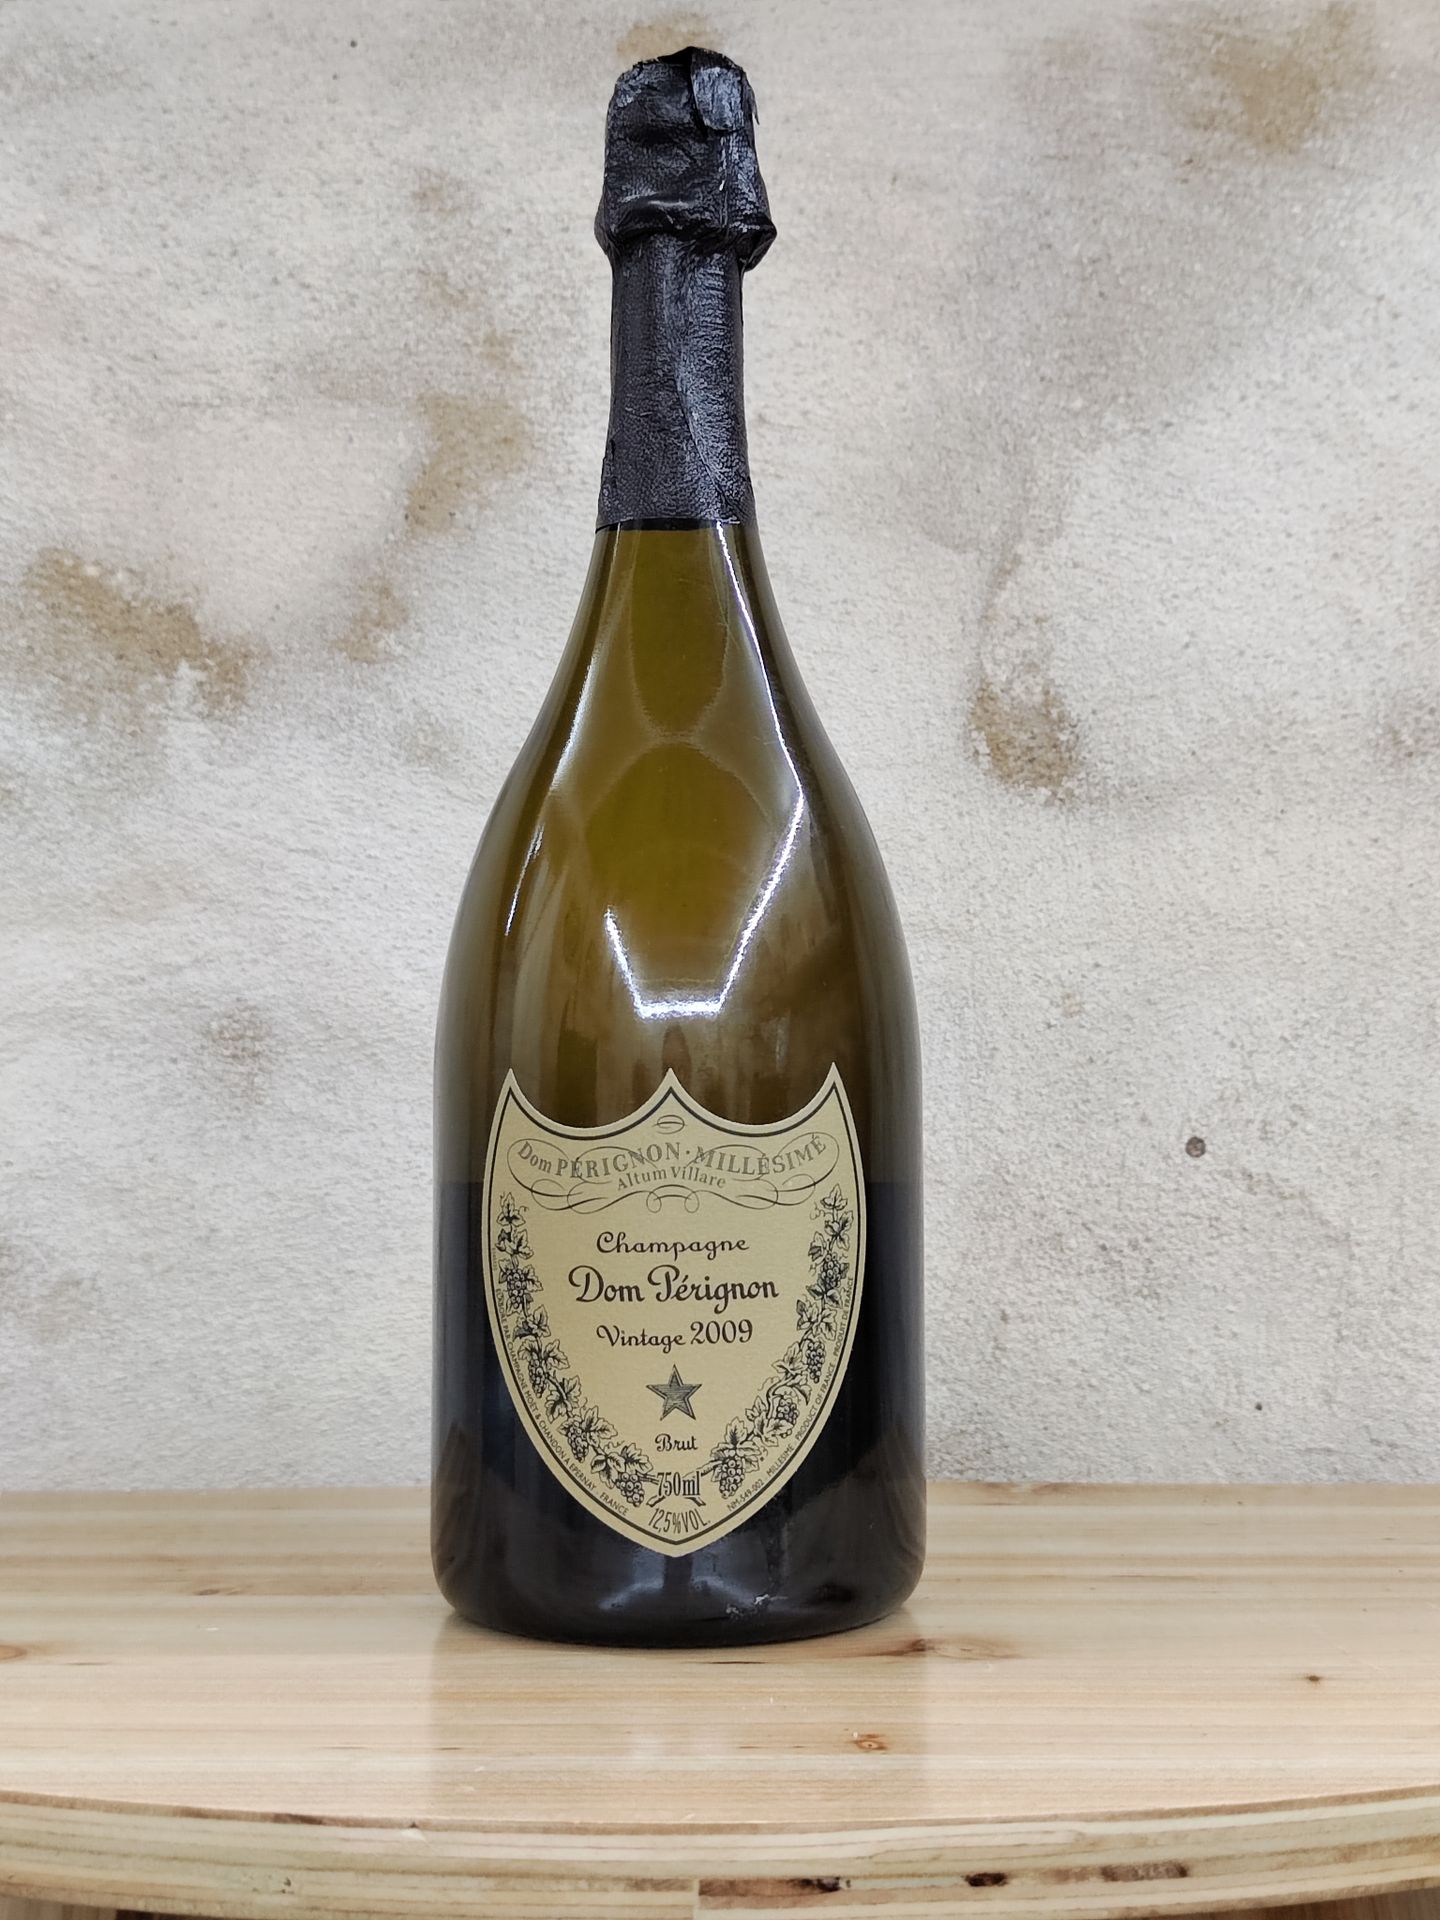 Null 1 bouteille de champagne brut DOM PERIGNON, Vintage 2009.
Dans sa boite.